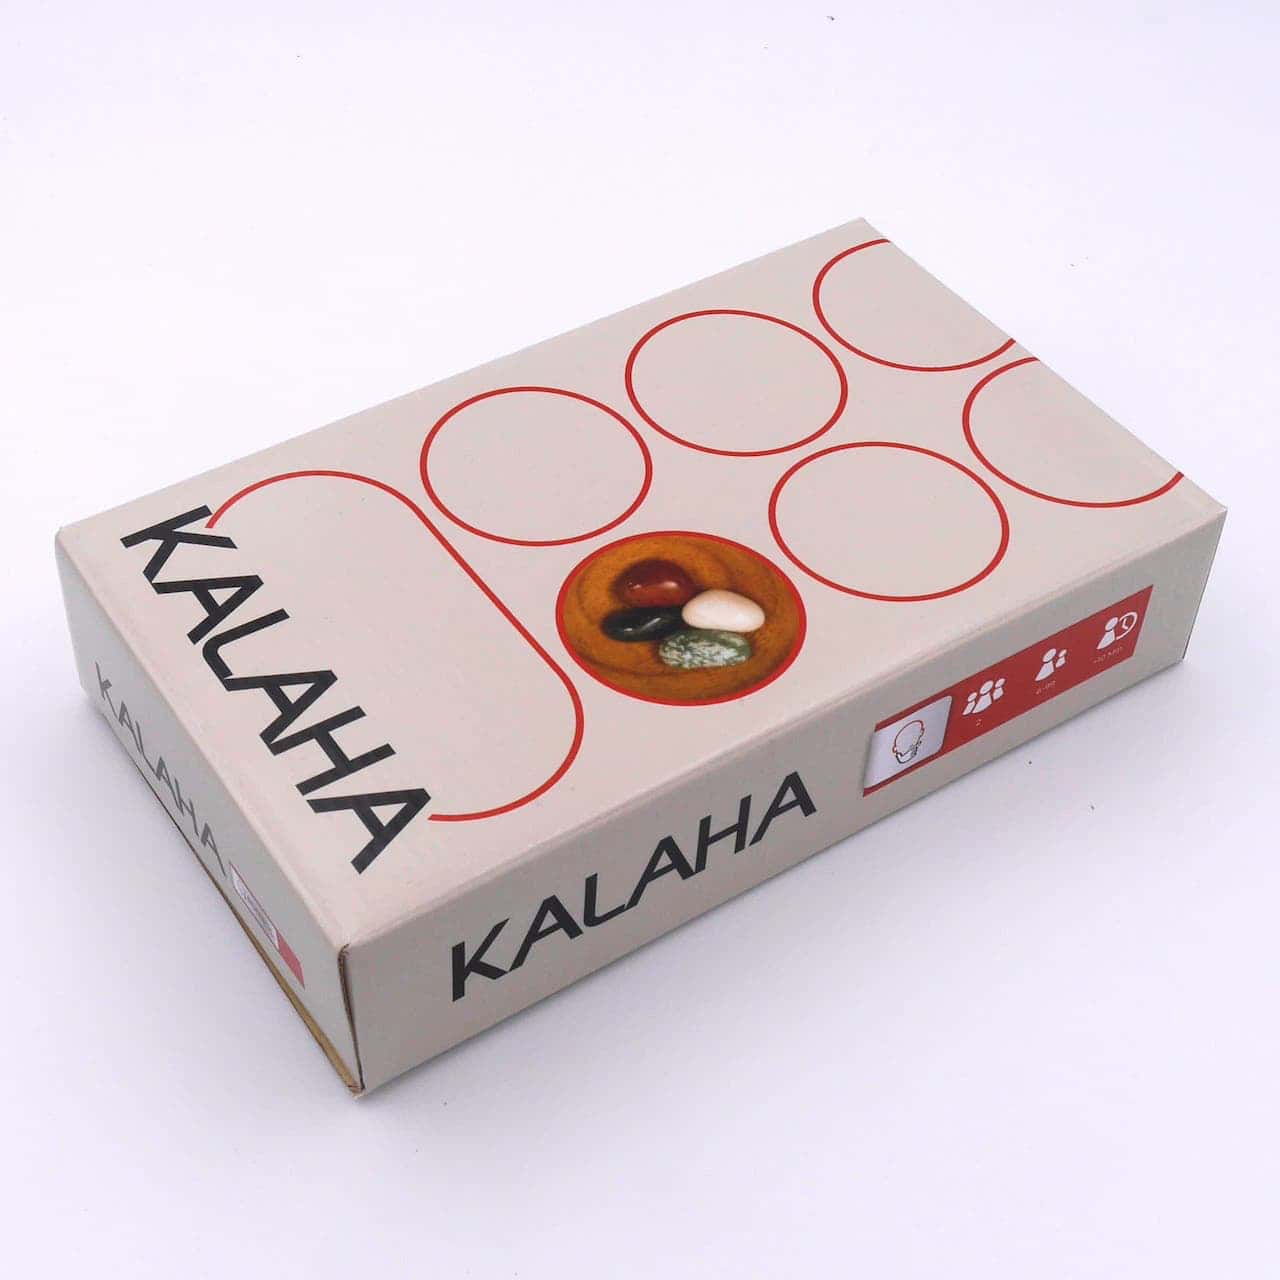 Kalaha - hochwertiges Steinchenspiel inkl. Halbedelsteinen aus Holz für 2 Personen